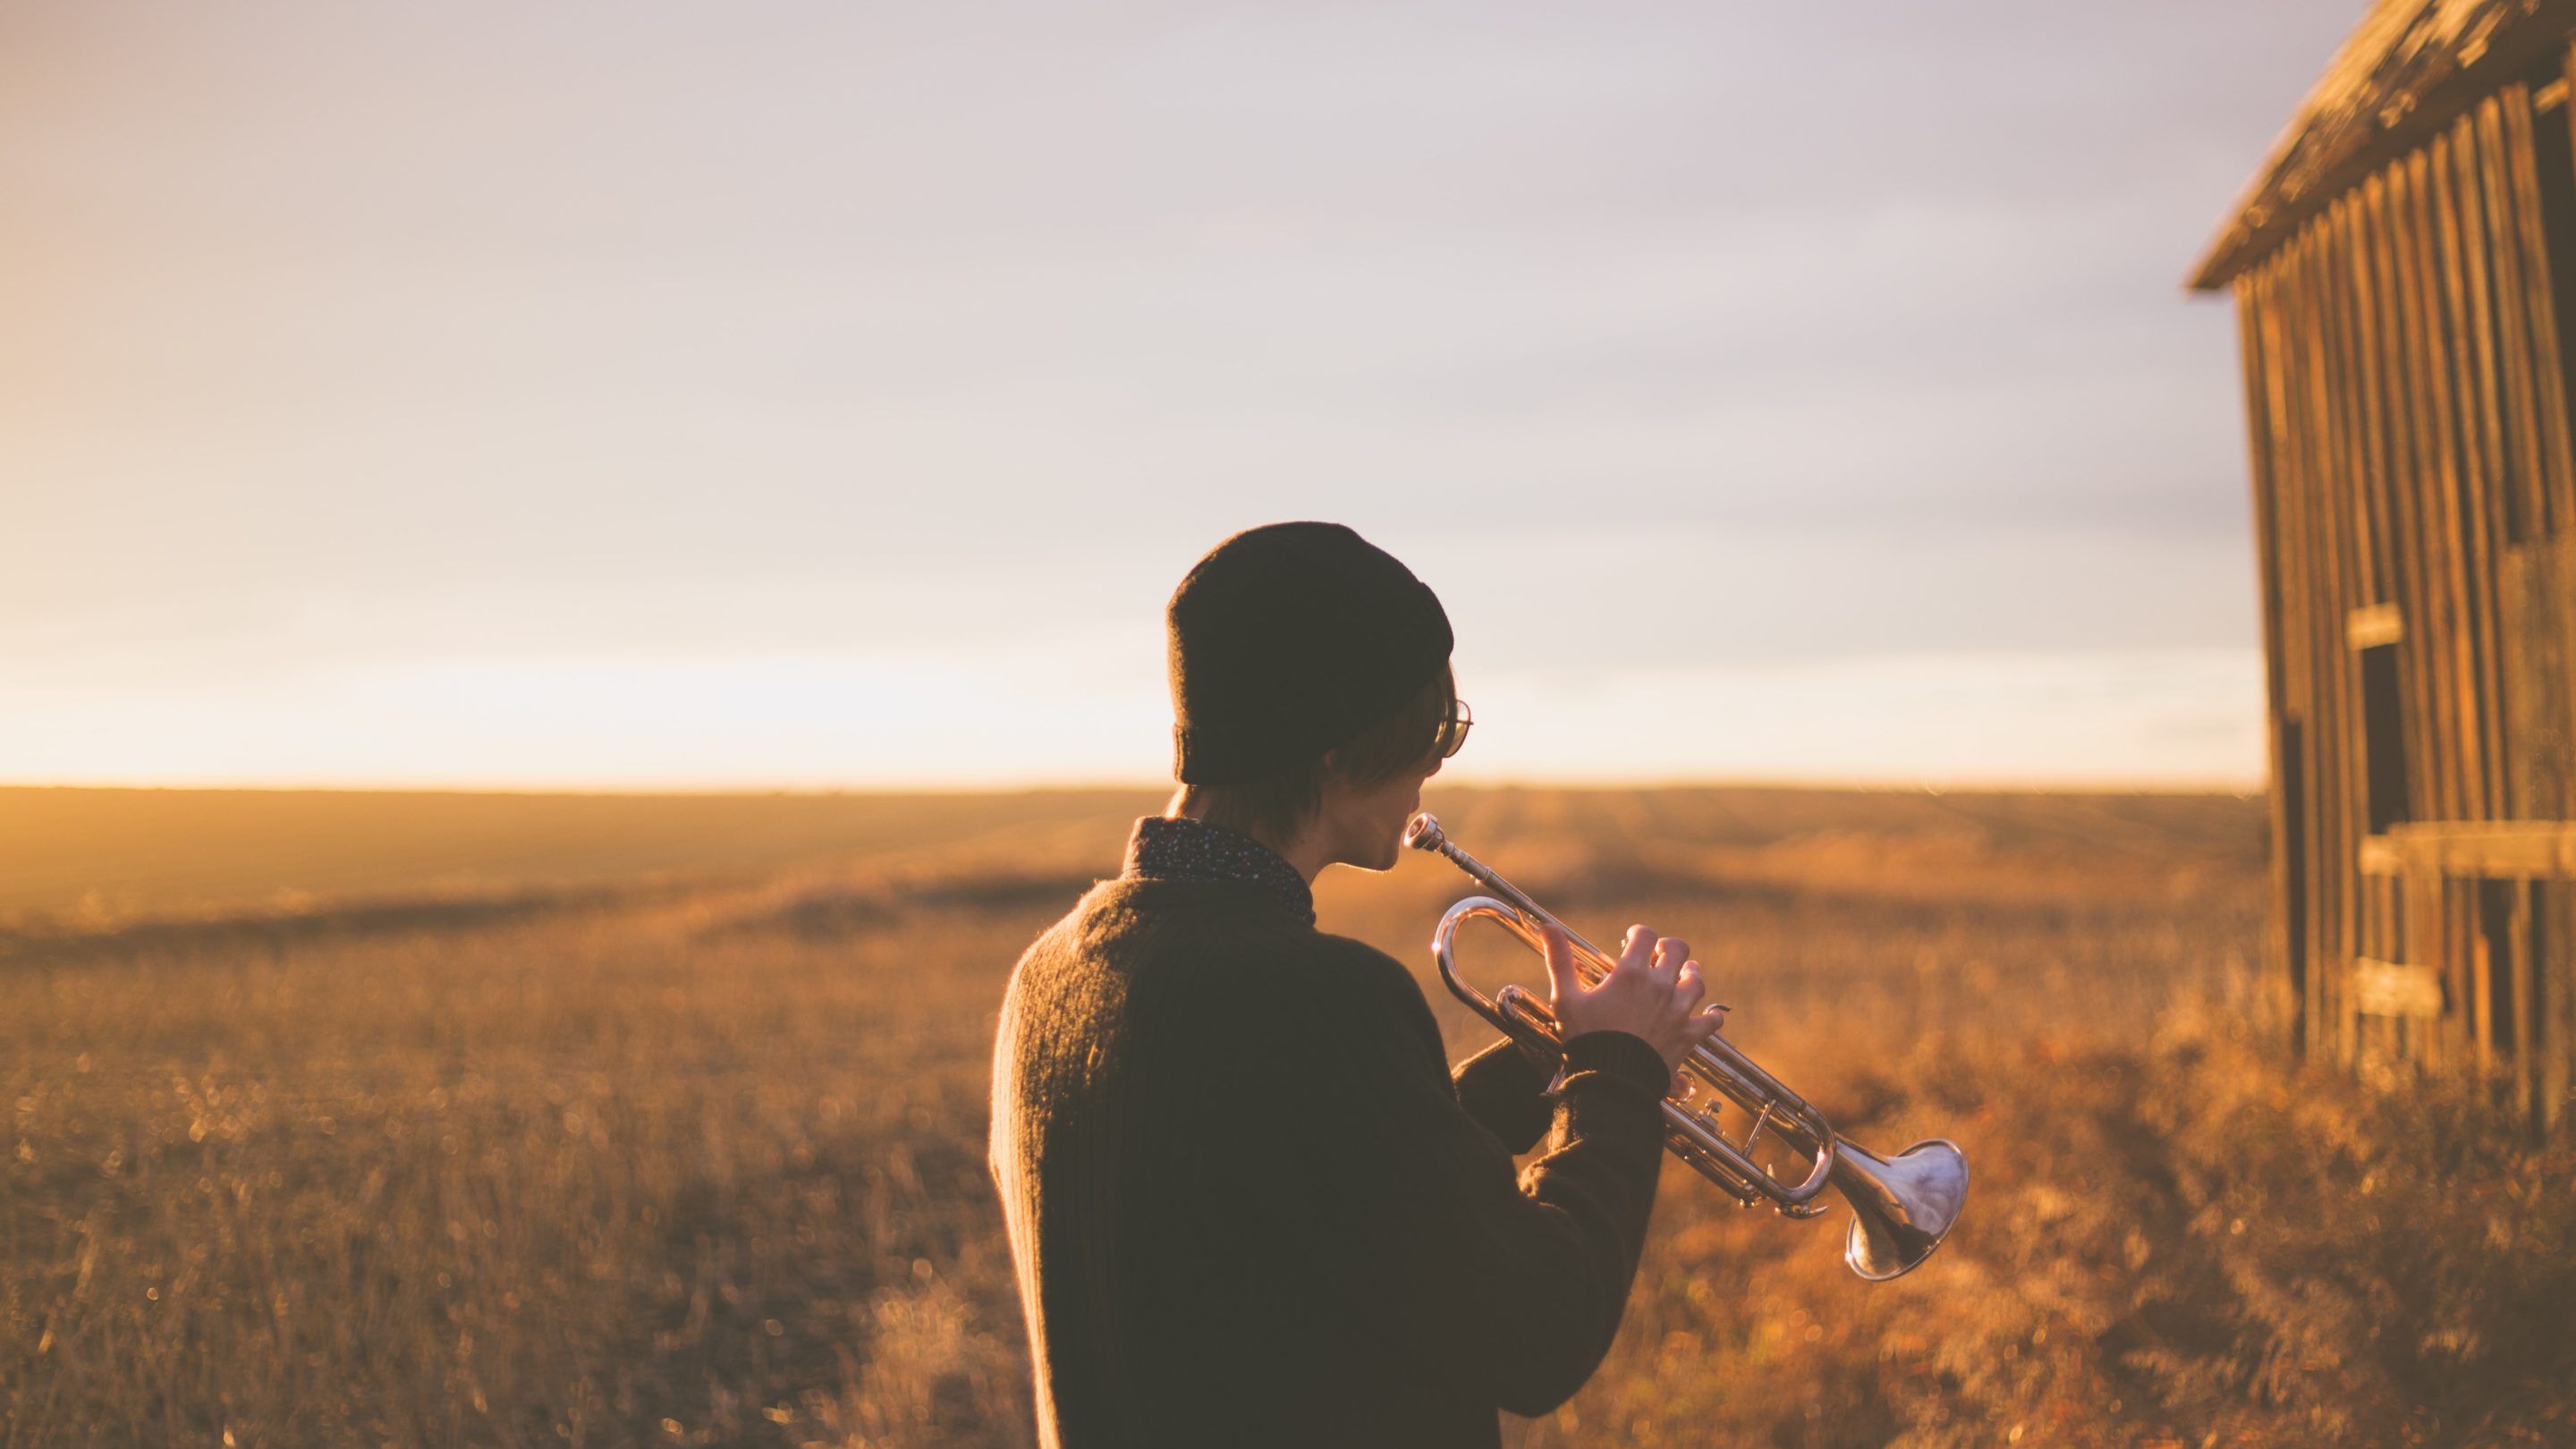 En mand, der spiller en trompet foran en lade, viser sine musikalske talenter.